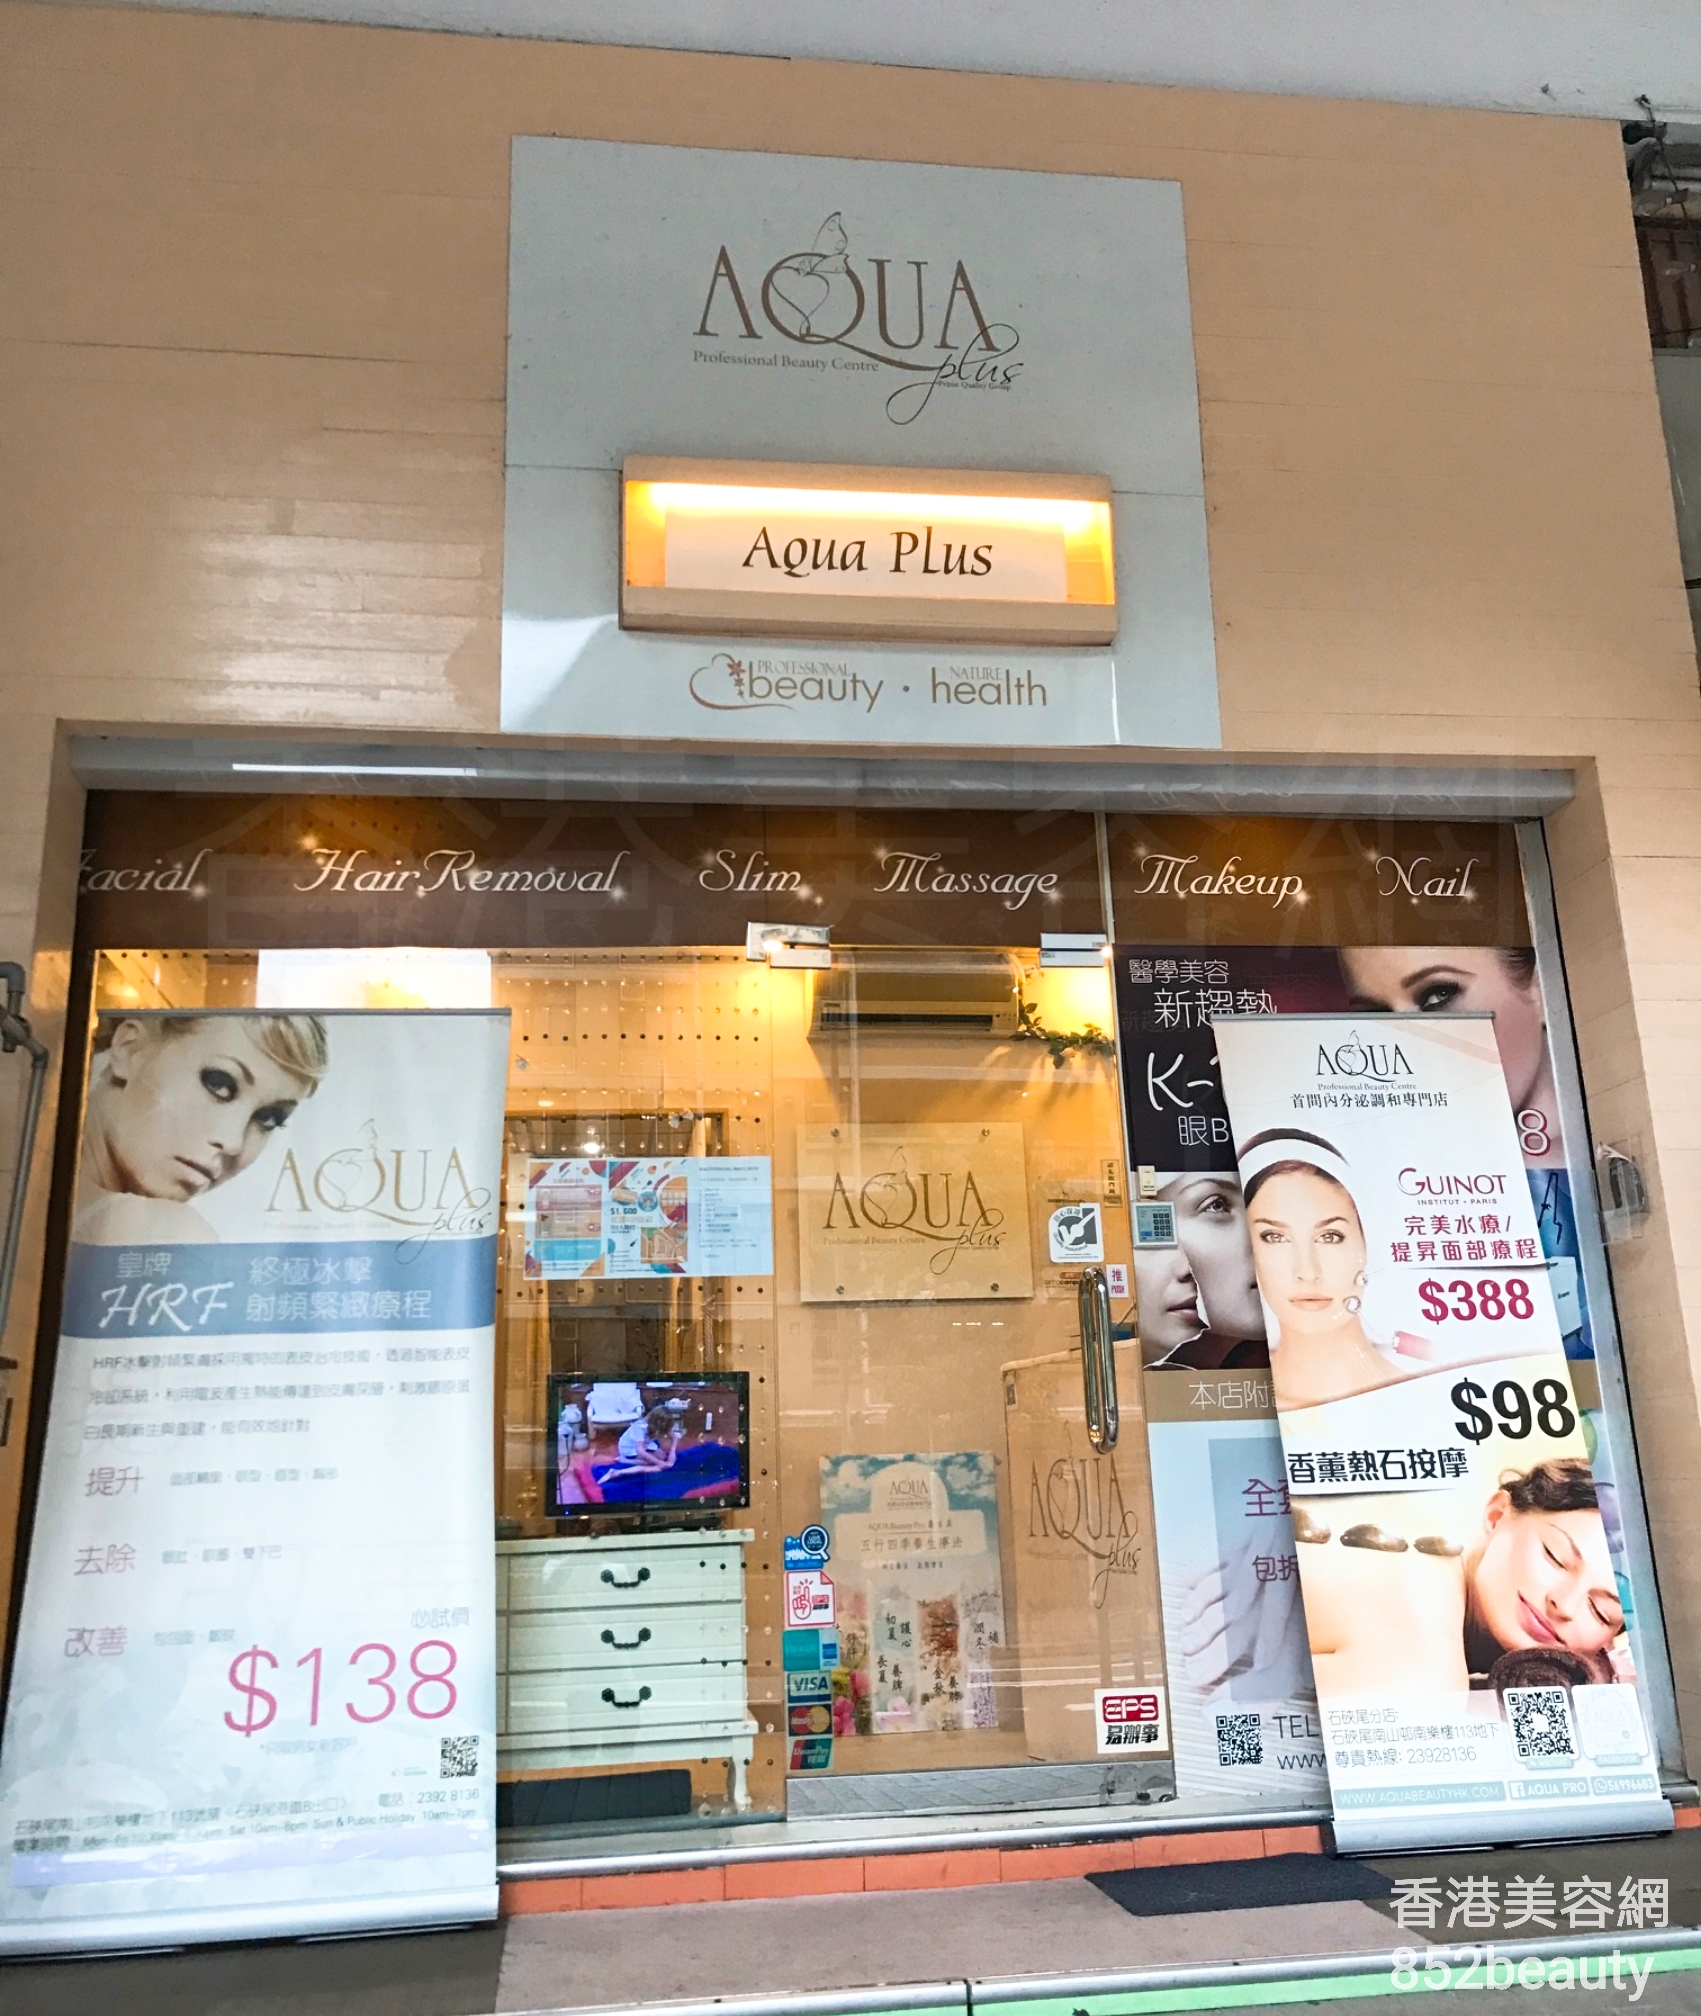 男士美容: AQUA Professional Beauty Centre (石硤尾分店)